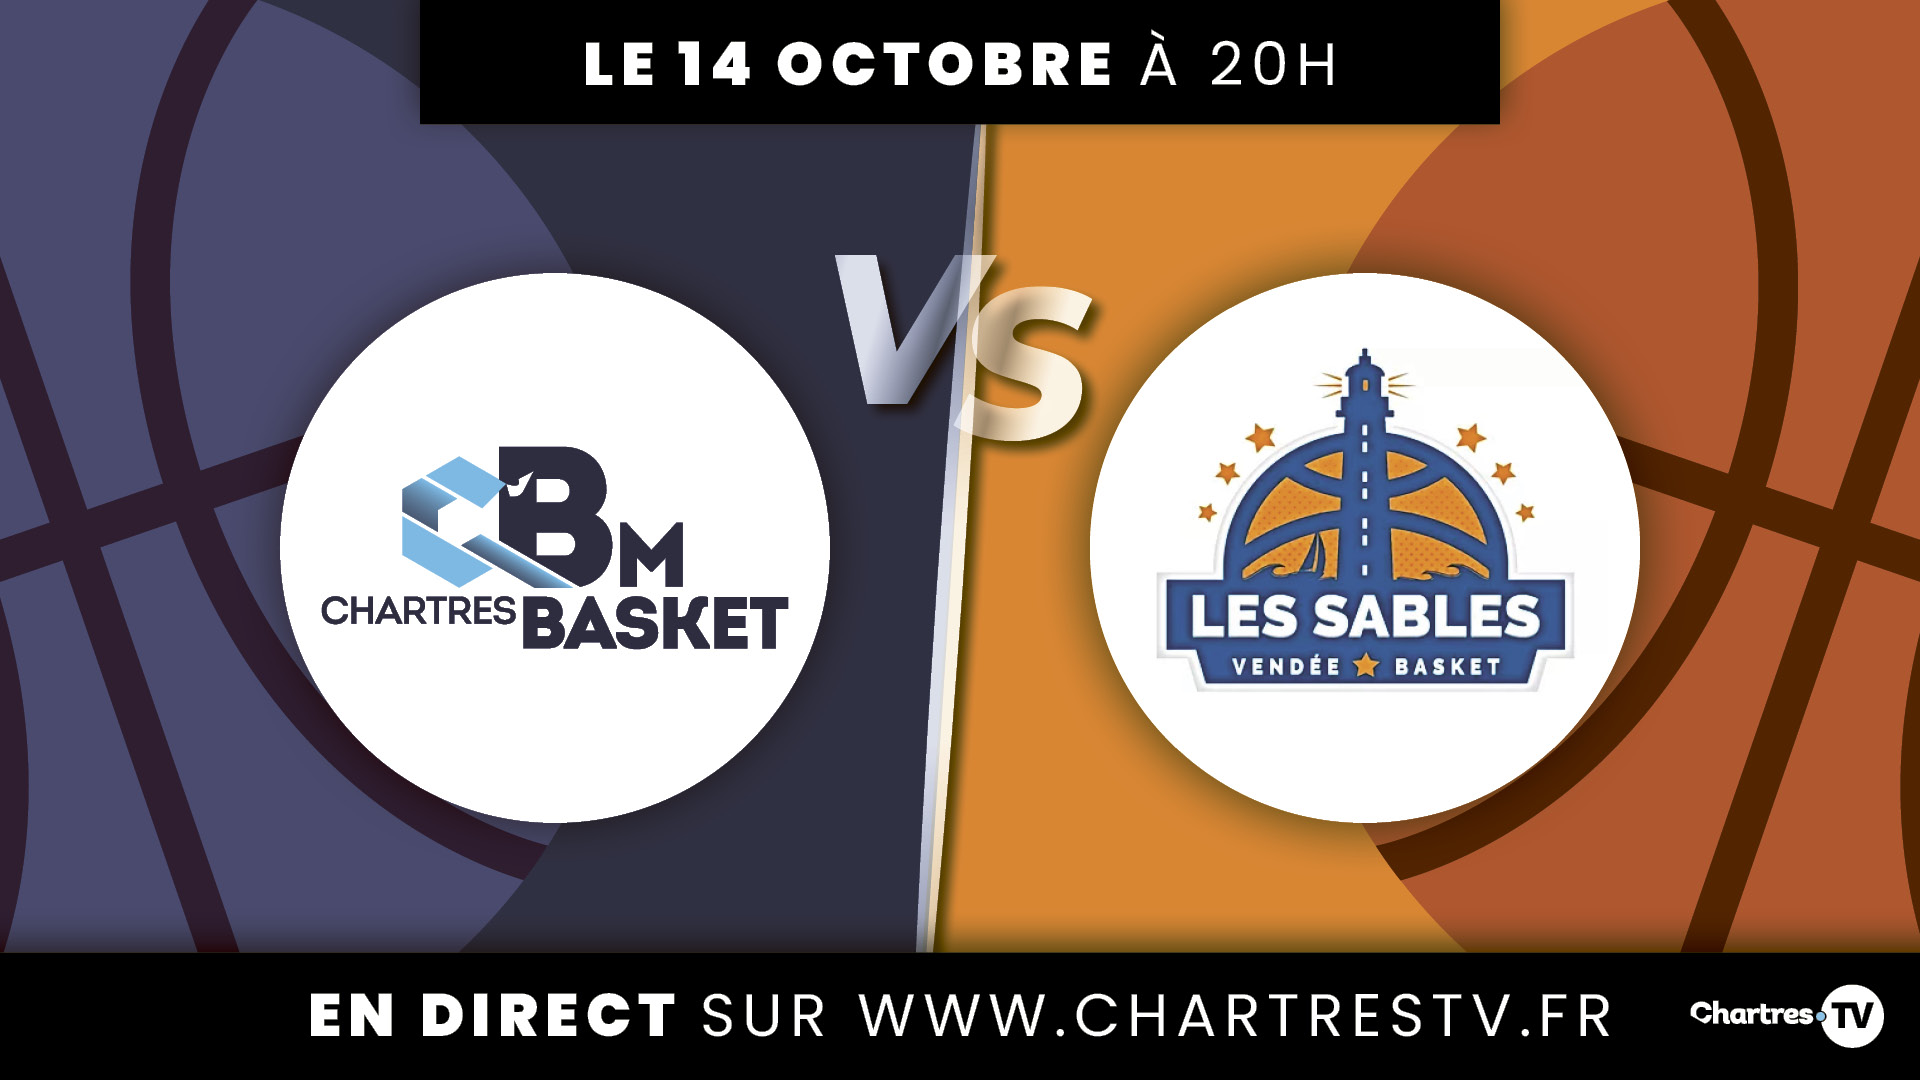 C'Chartres Basket Masculin vs Les Sables Vendée Basket